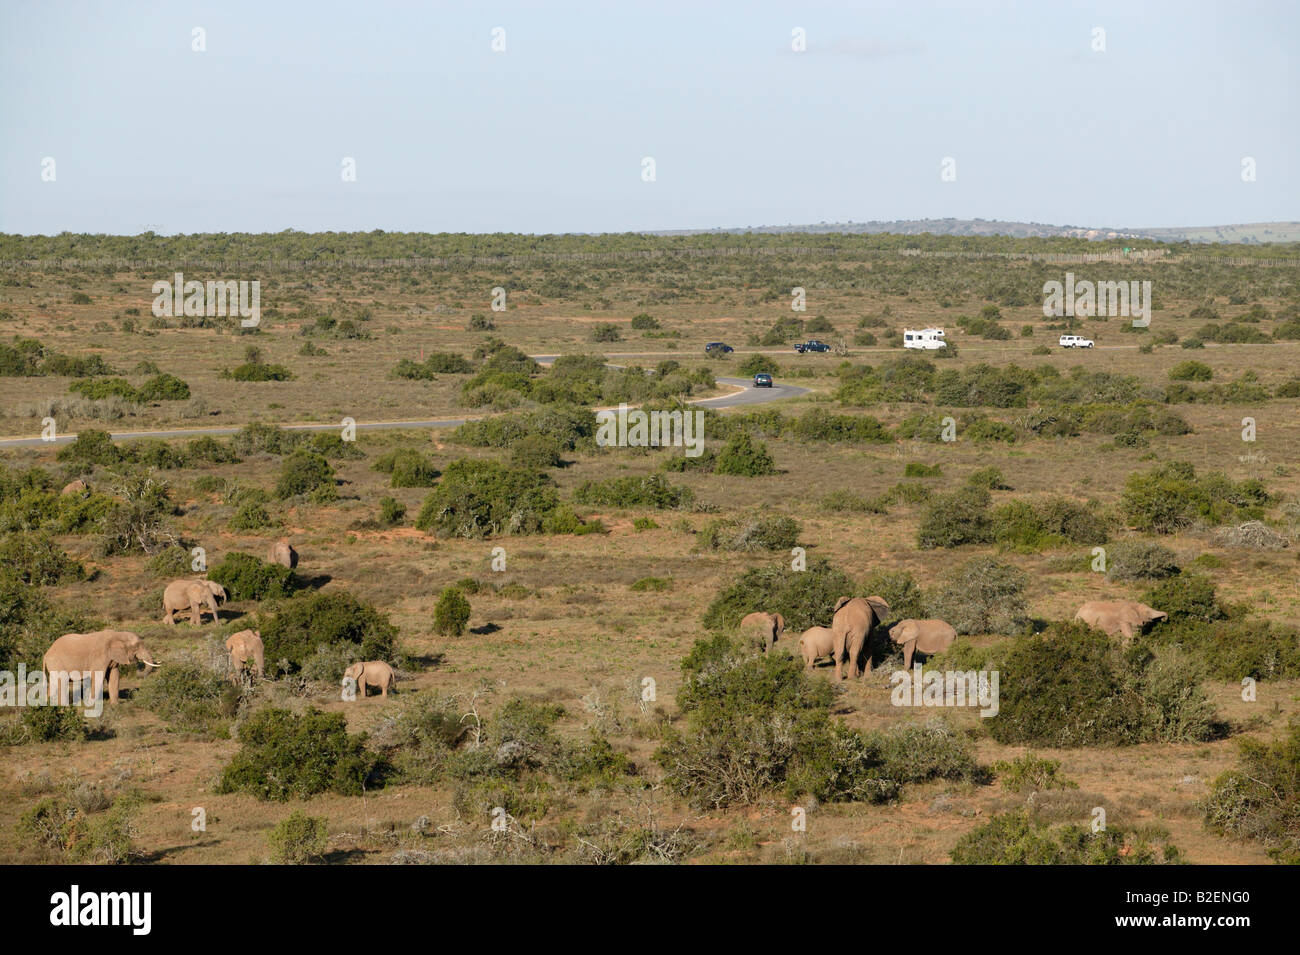 Una vista escénica de elefantes que pastan en el Parque Nacional de Elefantes Addo con vehículos de turismo en la distancia. Foto de stock